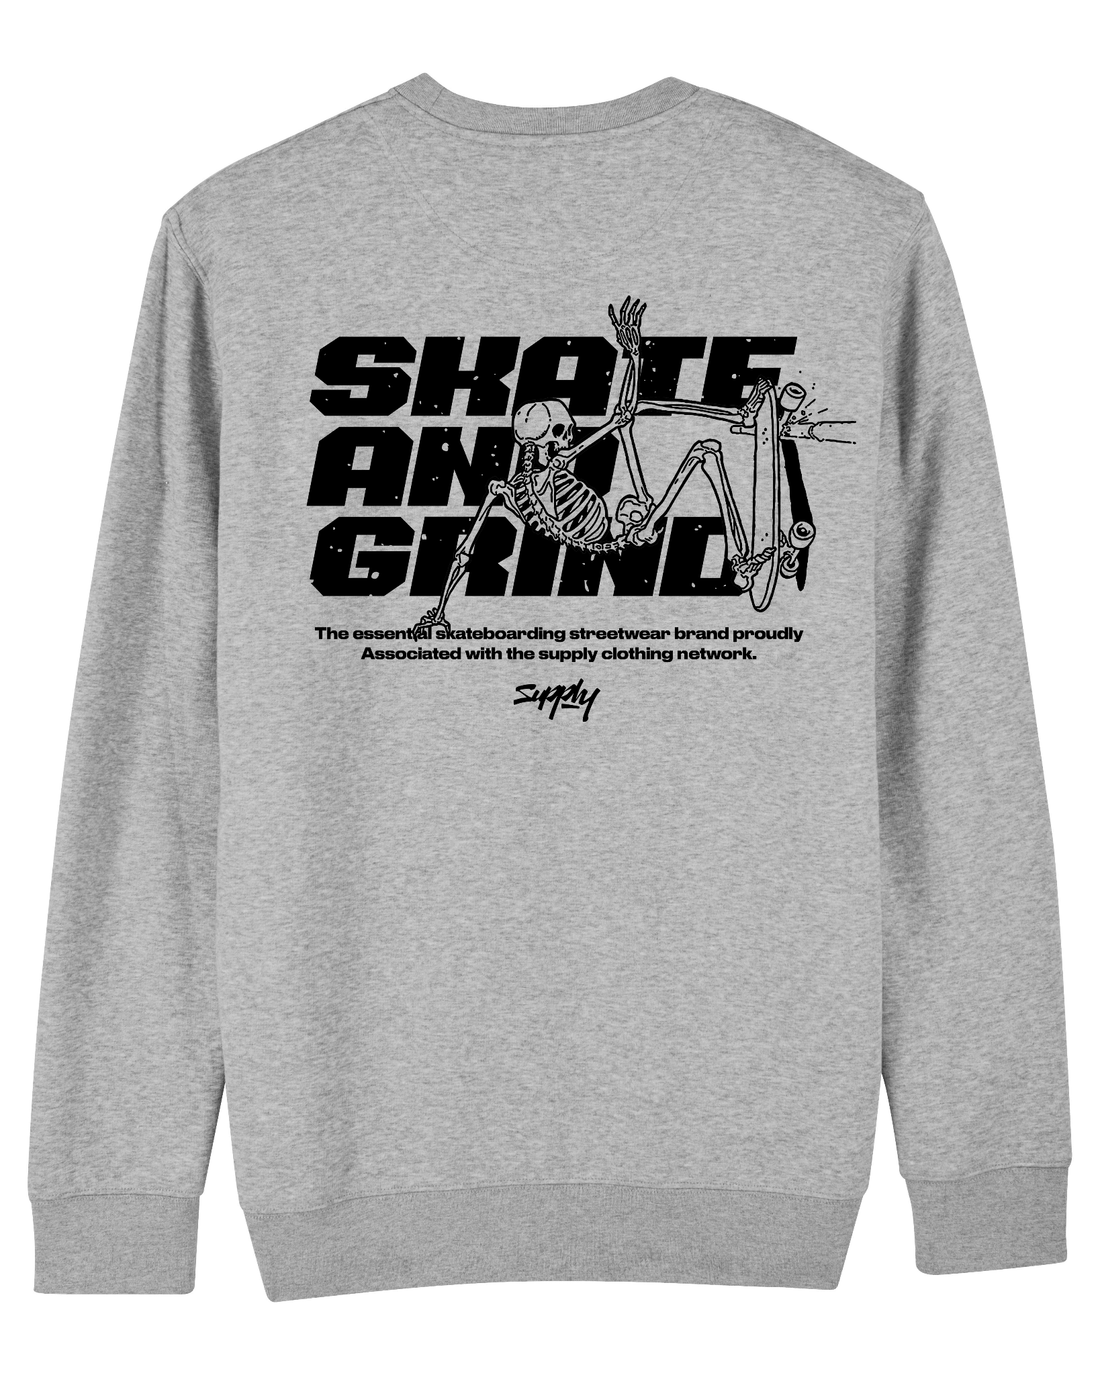 Grey Skater Sweatshirt, Skate & Grind Back Print